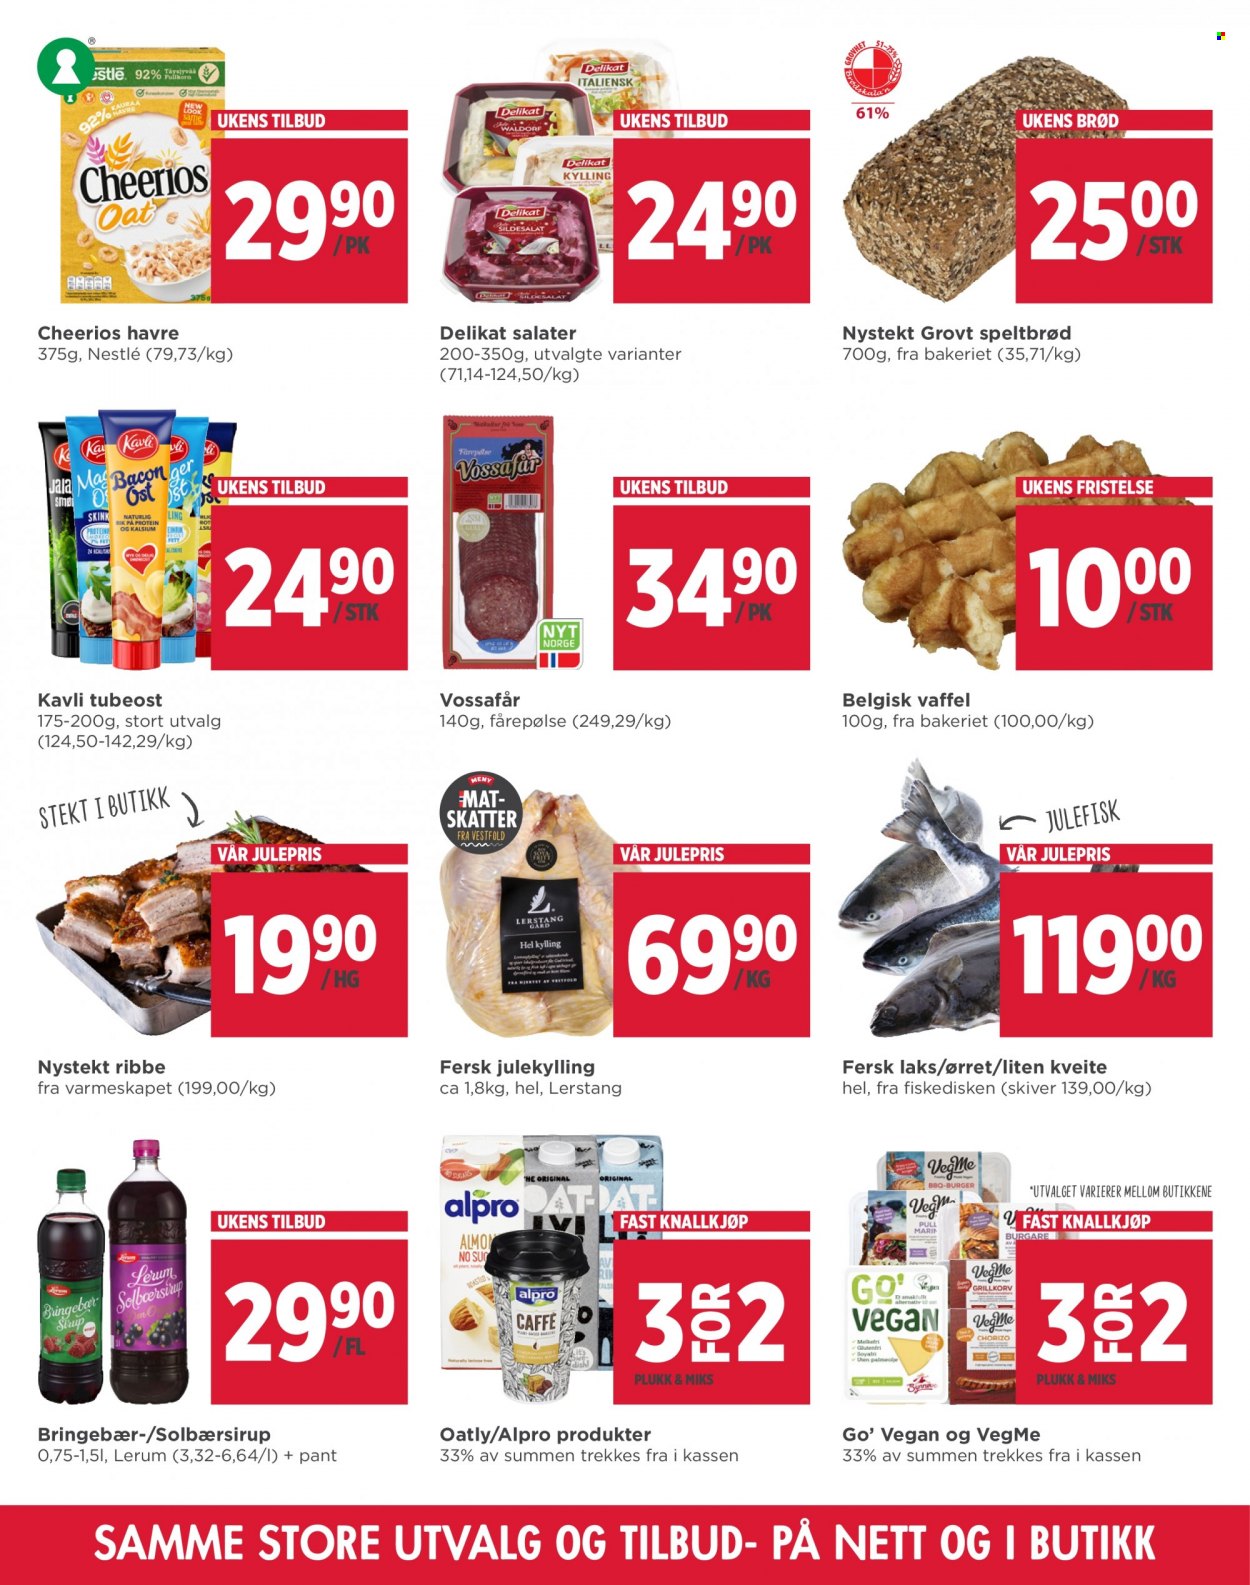 thumbnail - Kundeavis MENY - 22.11.2021 - 27.11.2021 - Produkter fra tilbudsaviser - bringebær, ribbe, havre, brød, nystekt ribbe, Nestlé, Cheerios, solbærsirup. Side 3.